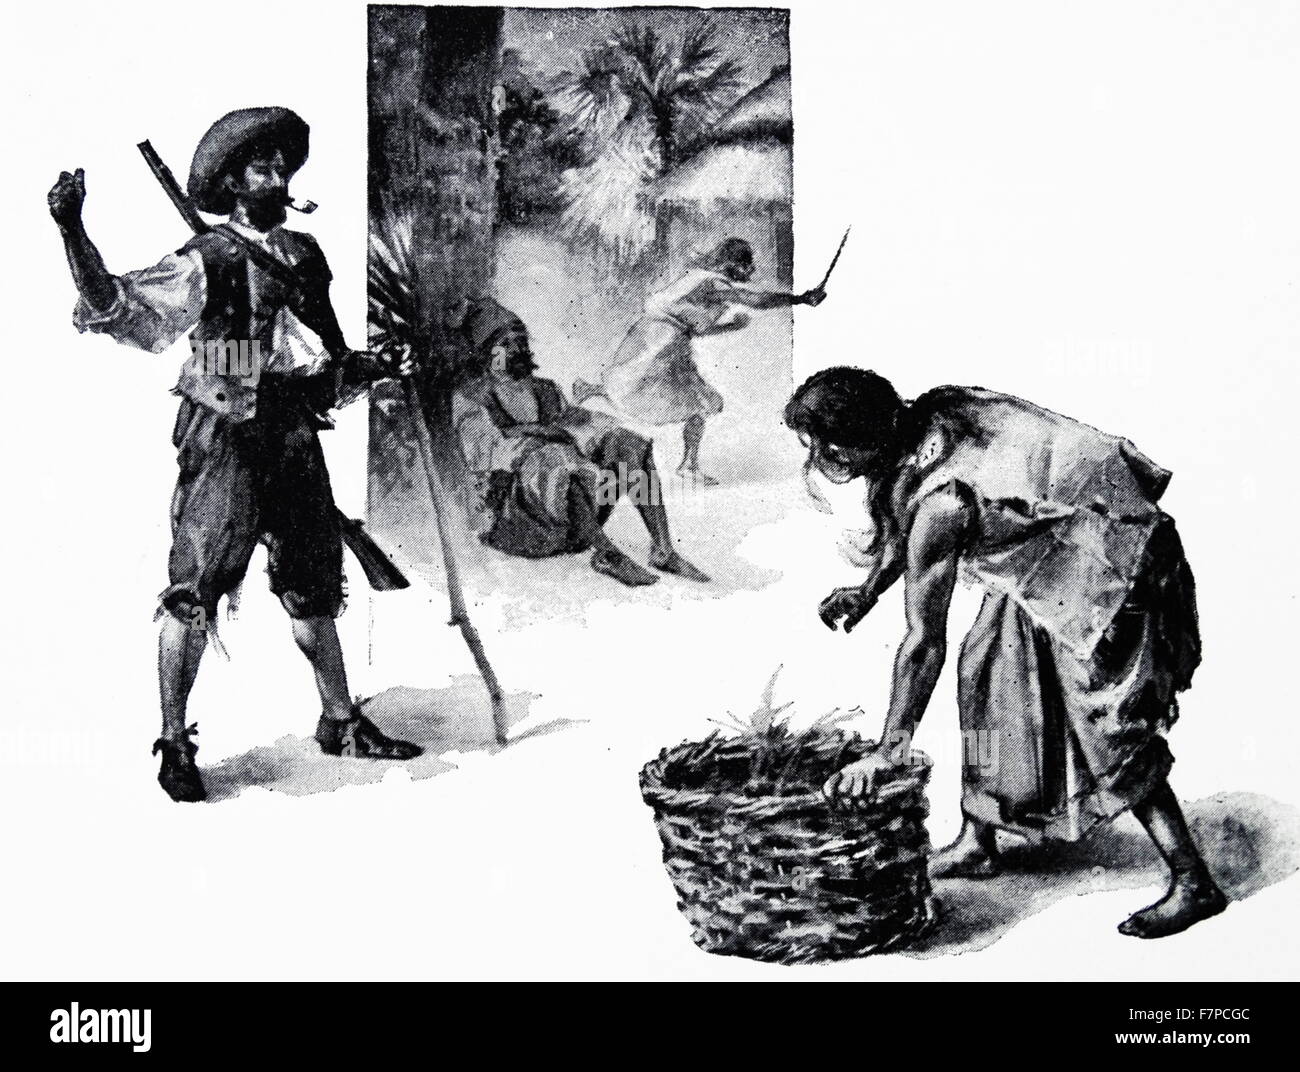 Illustration d'un dix-neuvième siècle, édition de 'Robinson Crusoe' un roman de Daniel Defoe. Le livre a été publié pour la première fois le 25 avril 1719. Il raconte l'histoire de Robinson Crusoé, échoué sur une île déserte depuis 28 ans et sa lutte pour la survie. Banque D'Images